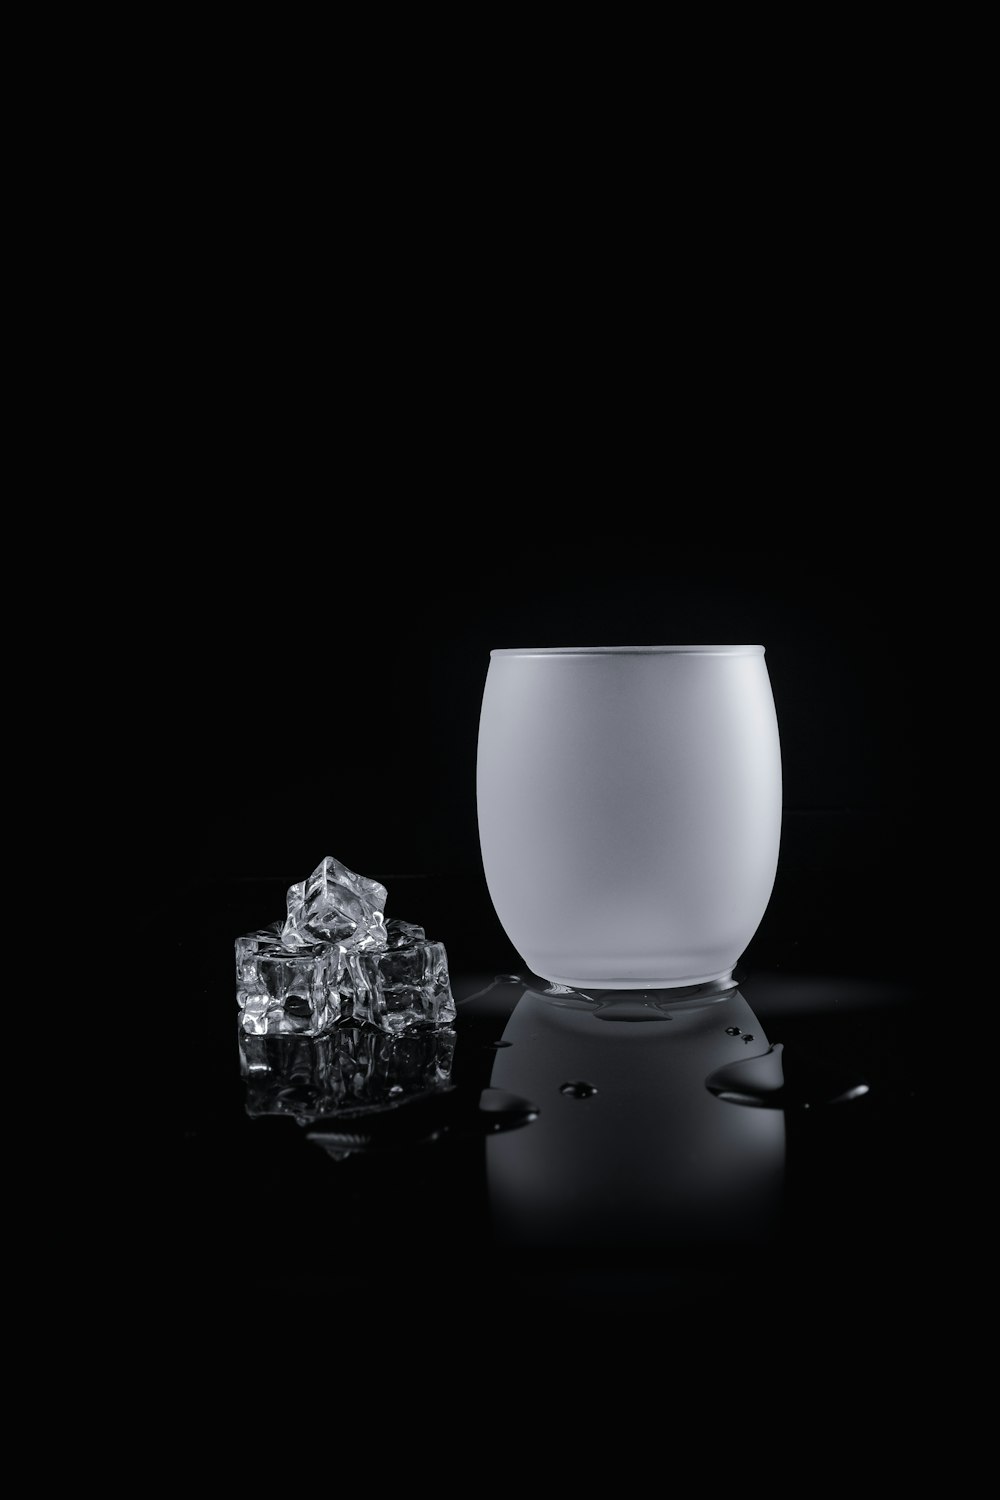 foto em tons de cinza de cubos de gelo perto do vaso